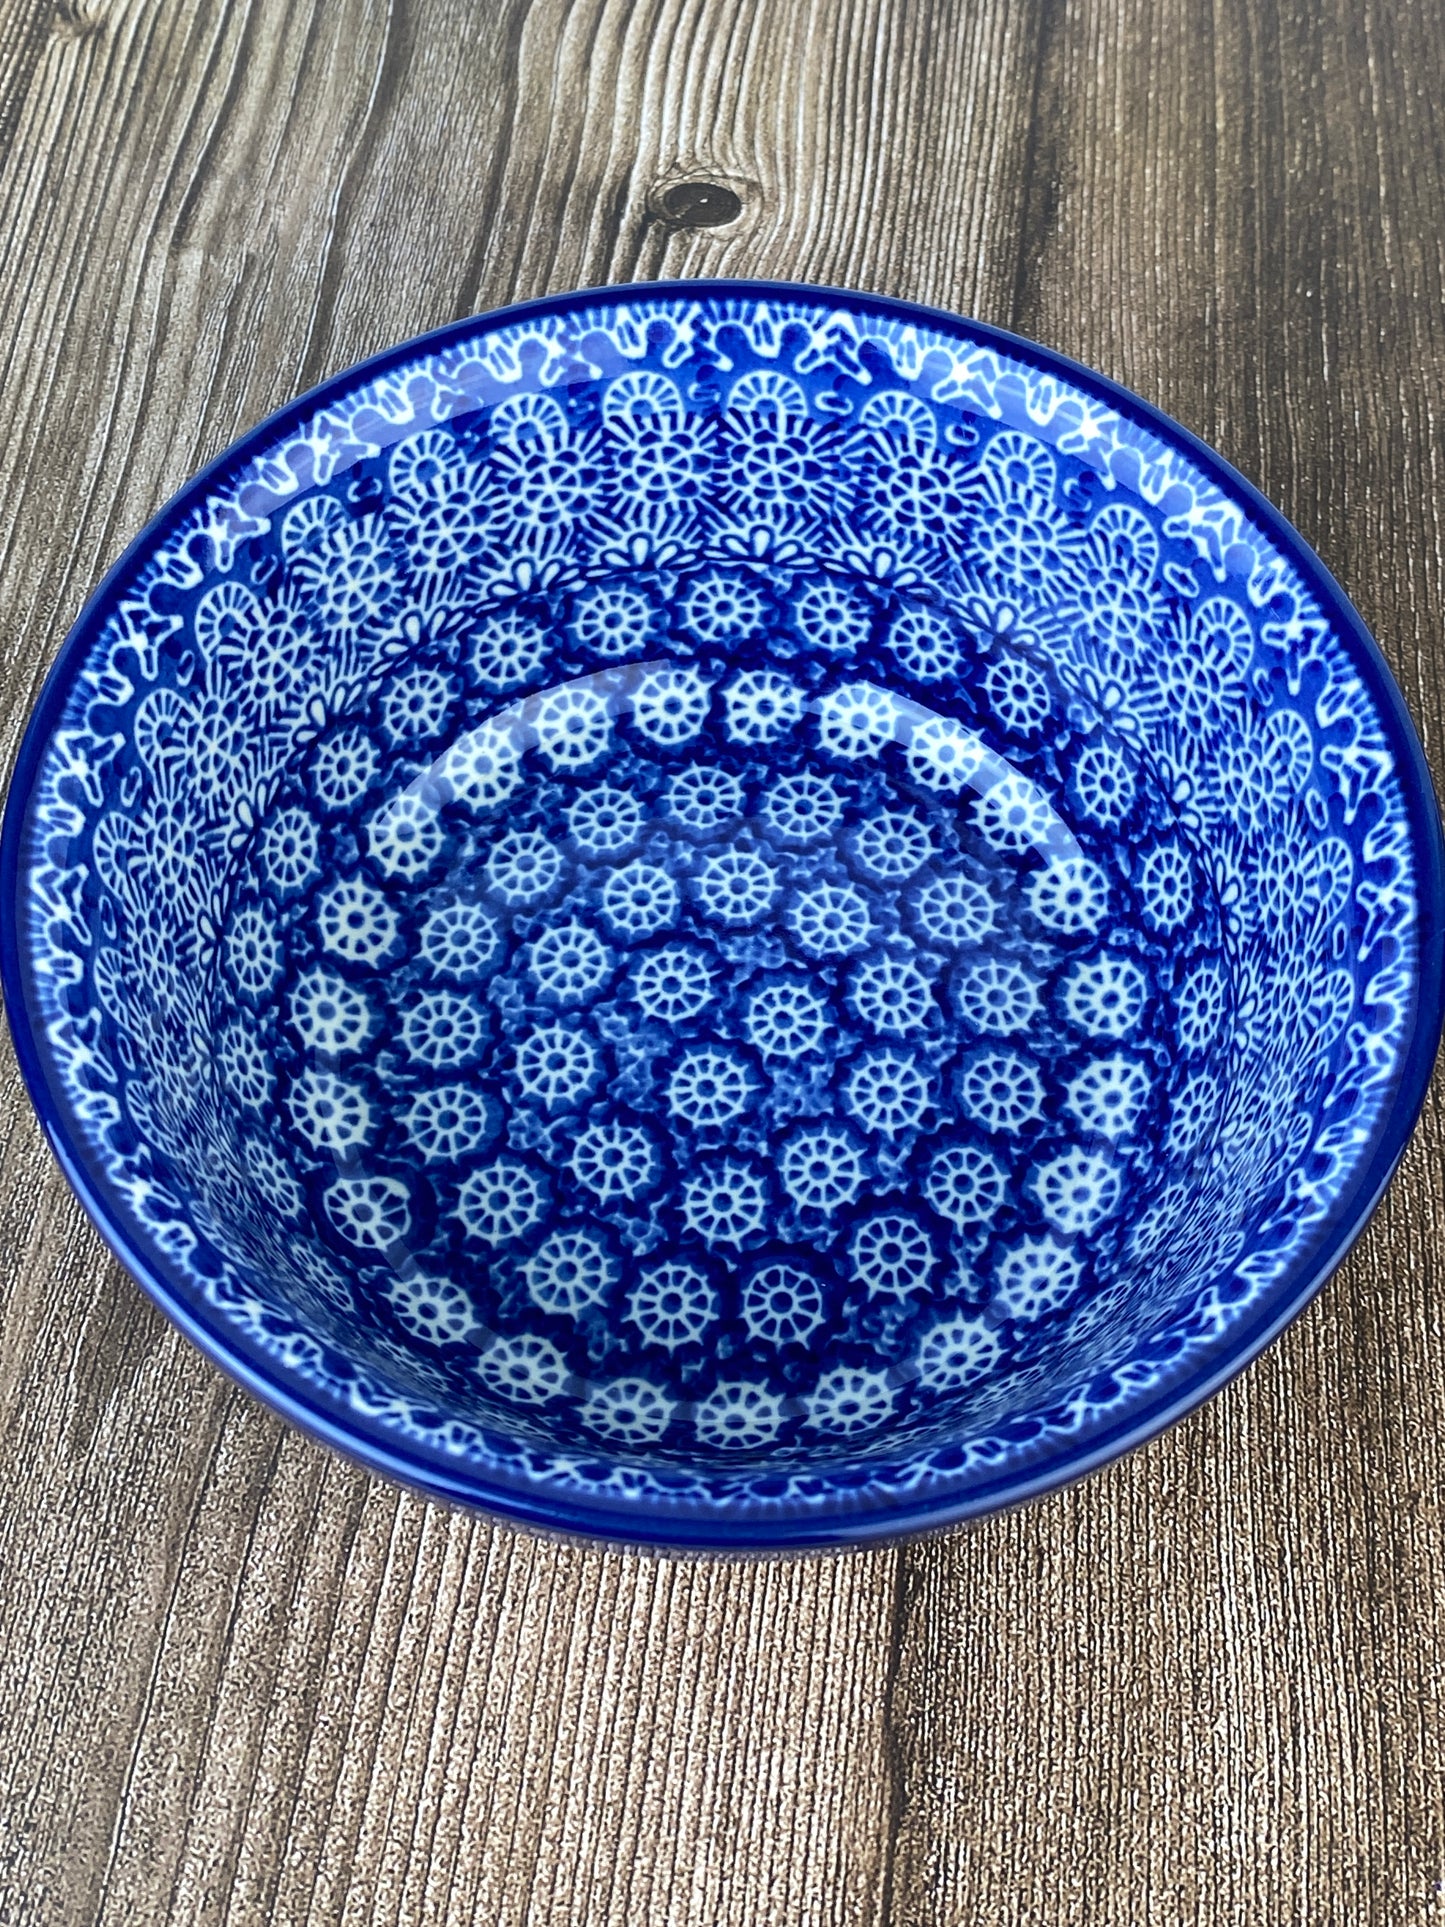 SALE Cereal Bowl - Shape 209 - Pattern 884